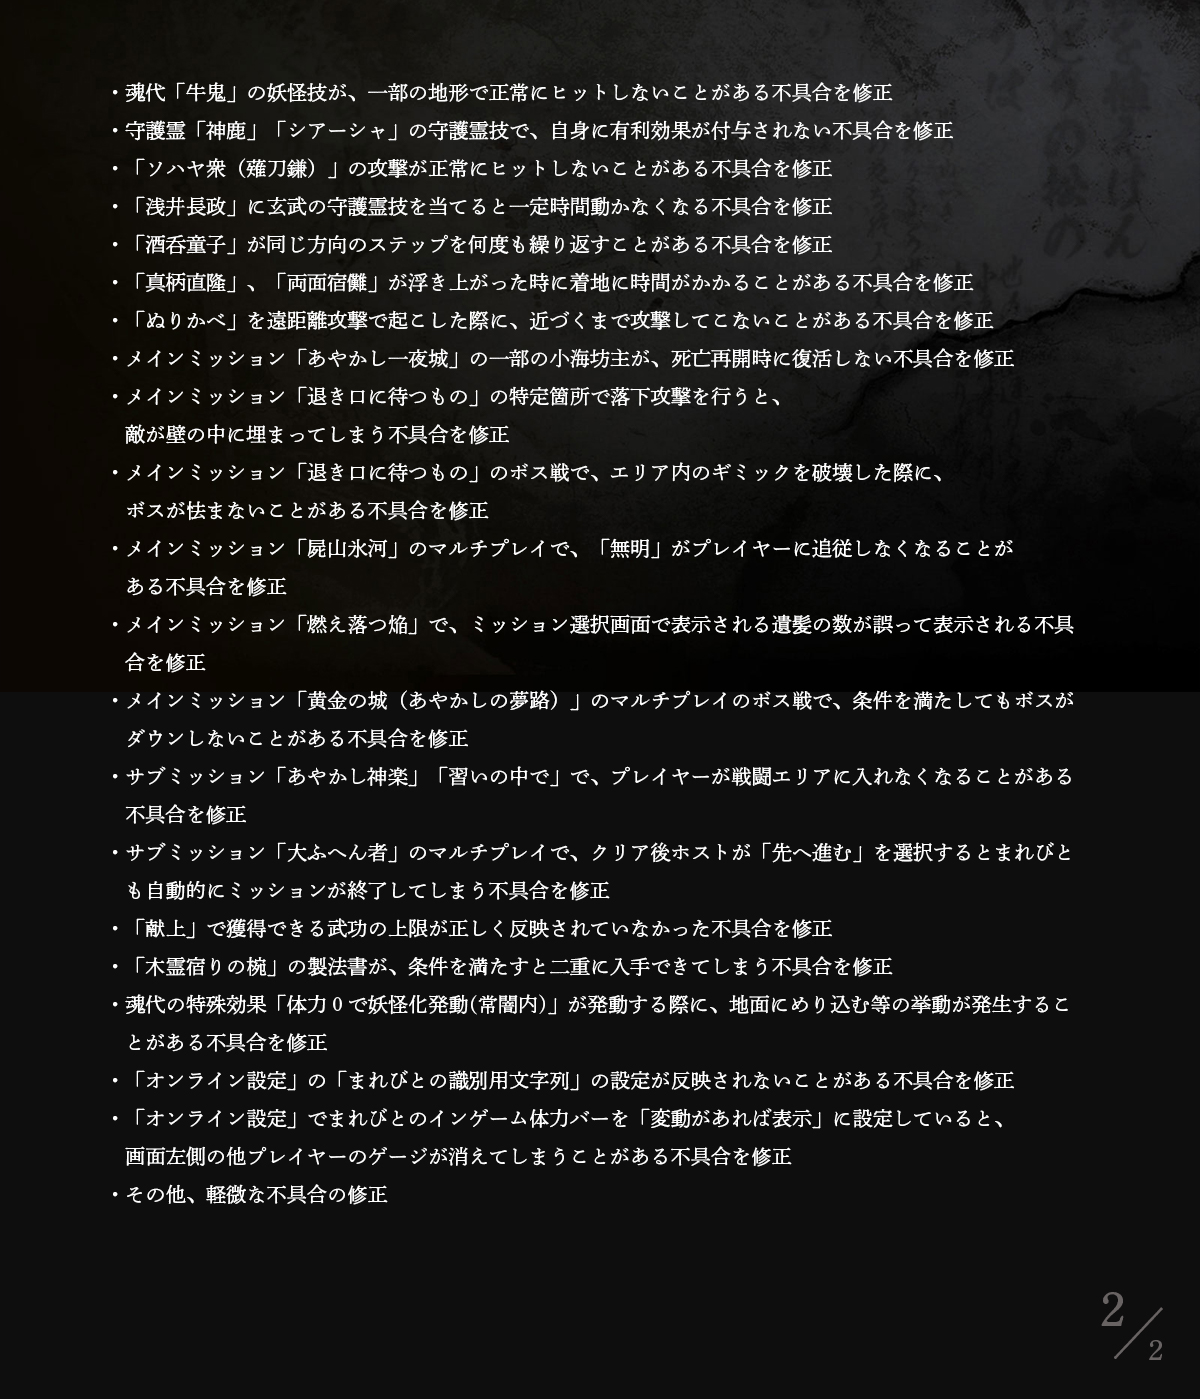 《仁王2 》1.04版更新内容说明